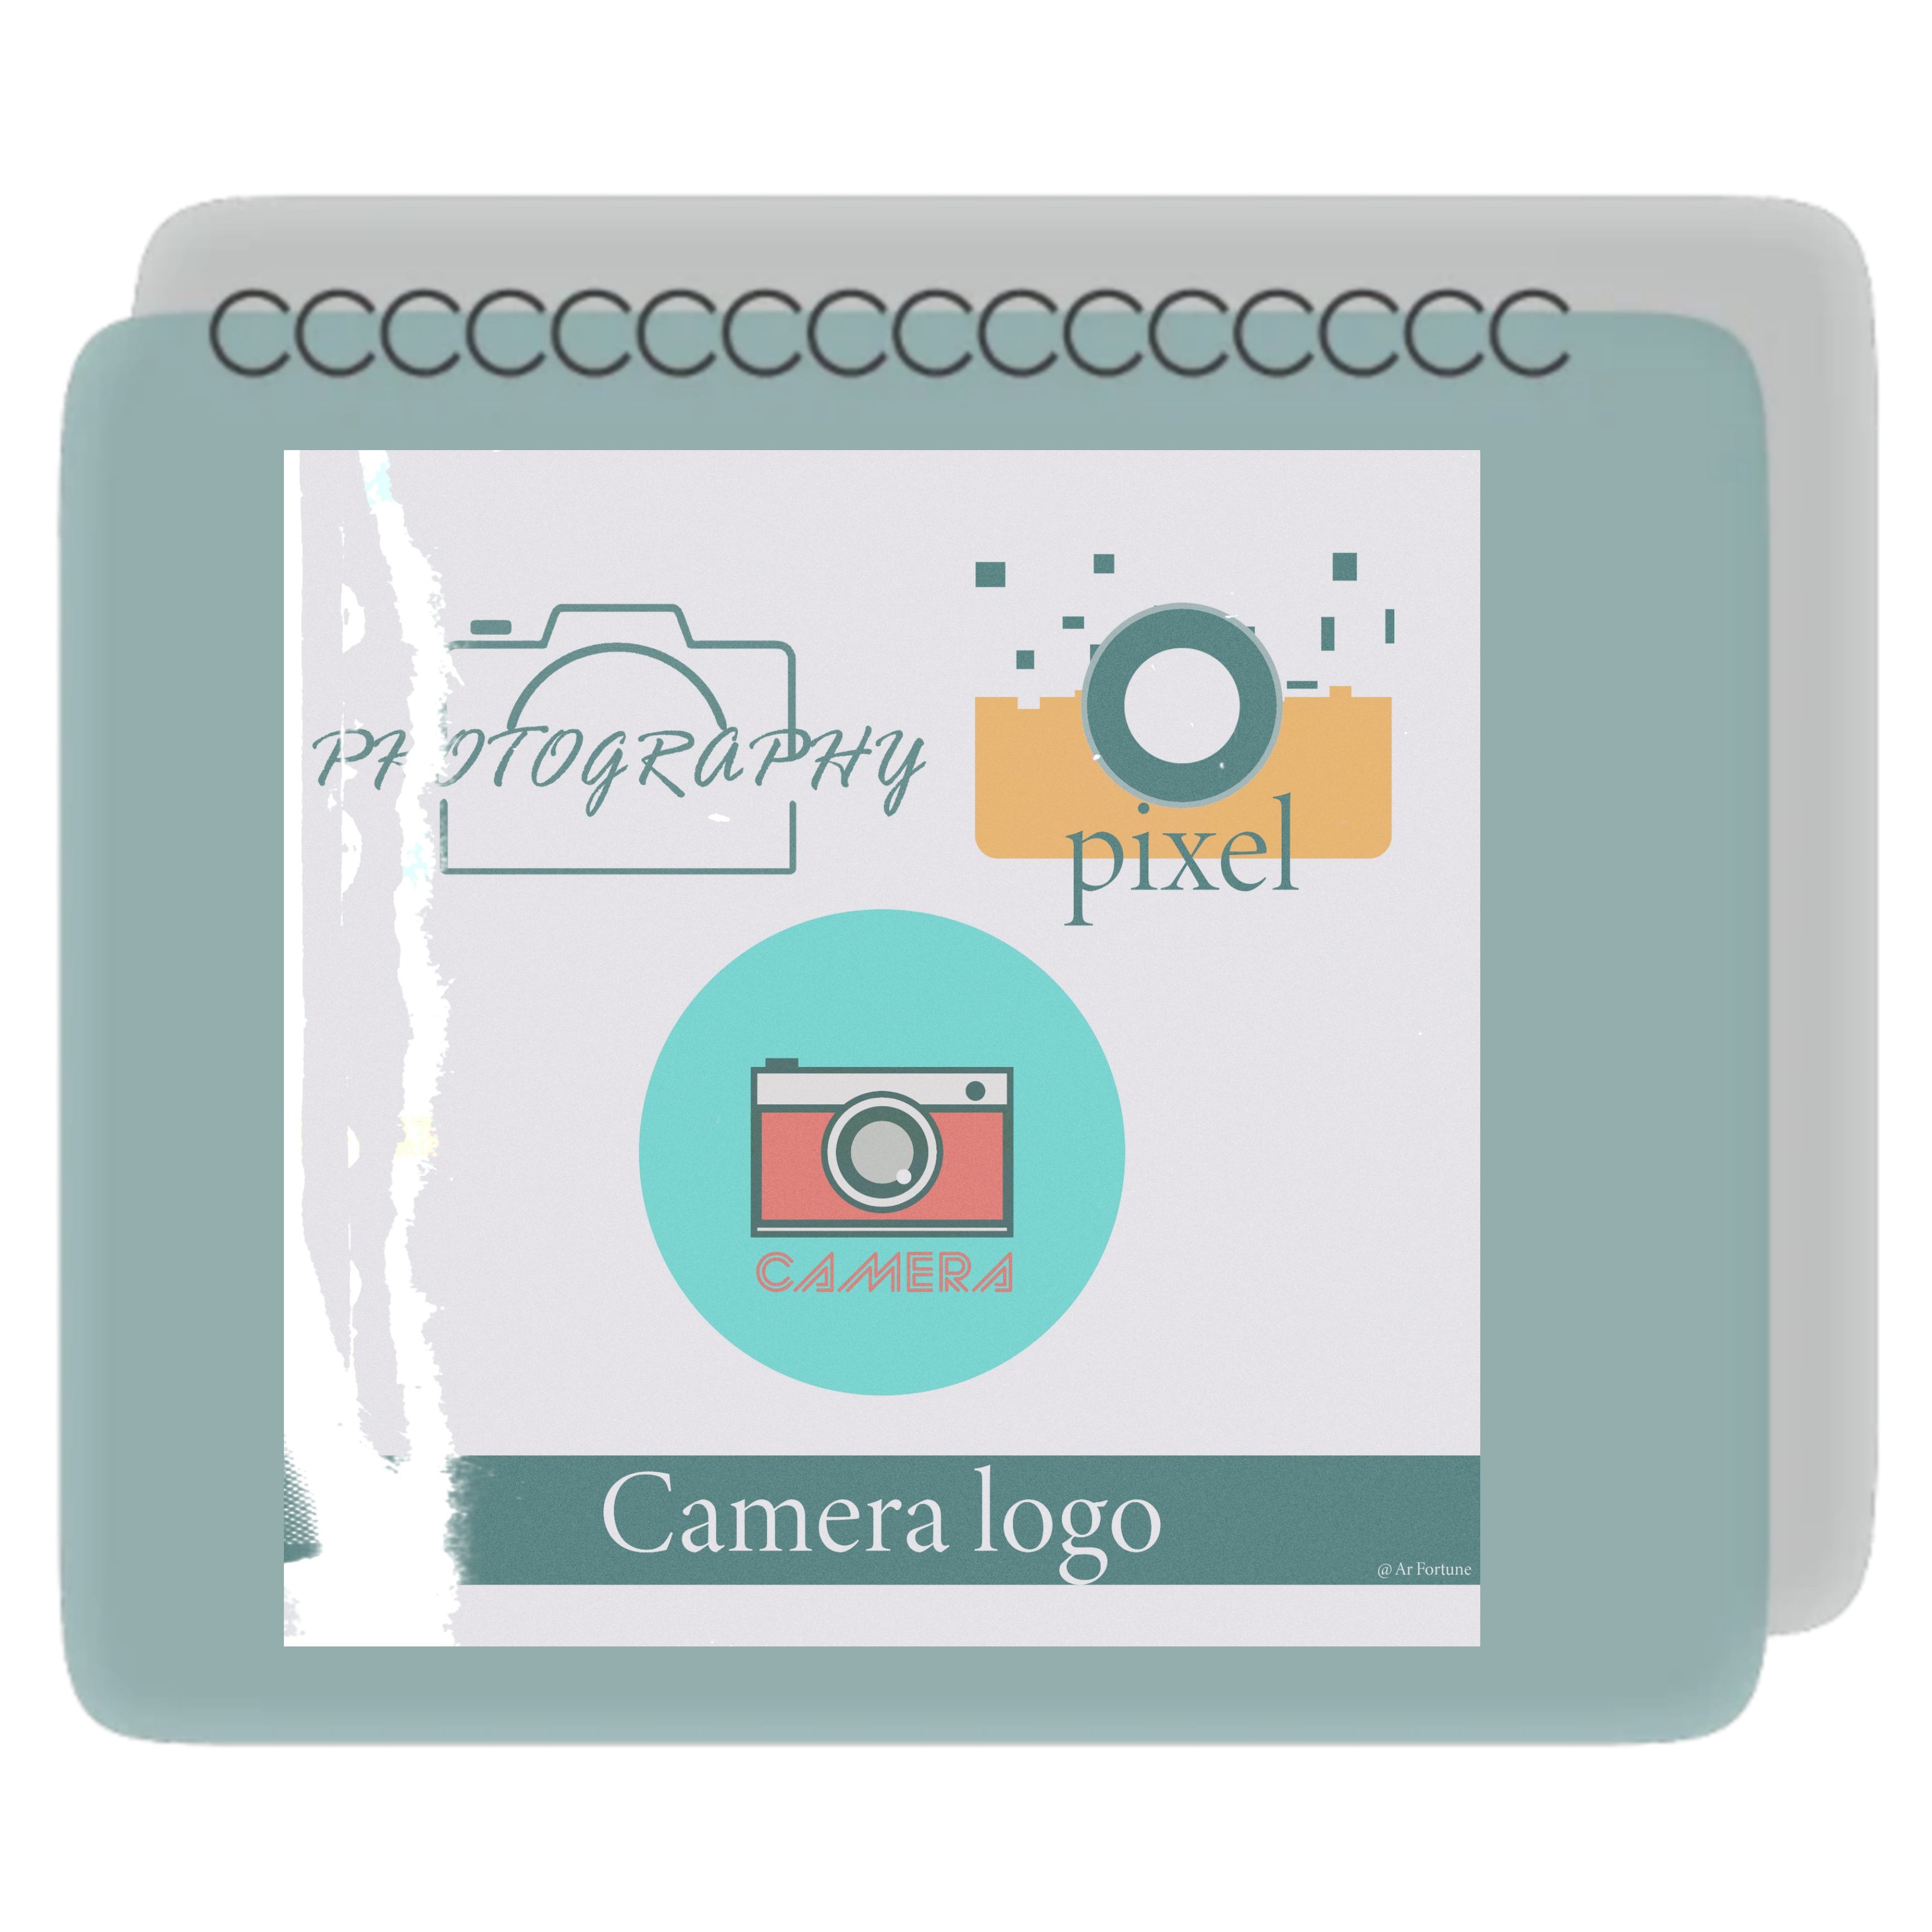 Camera logo desings preview image.